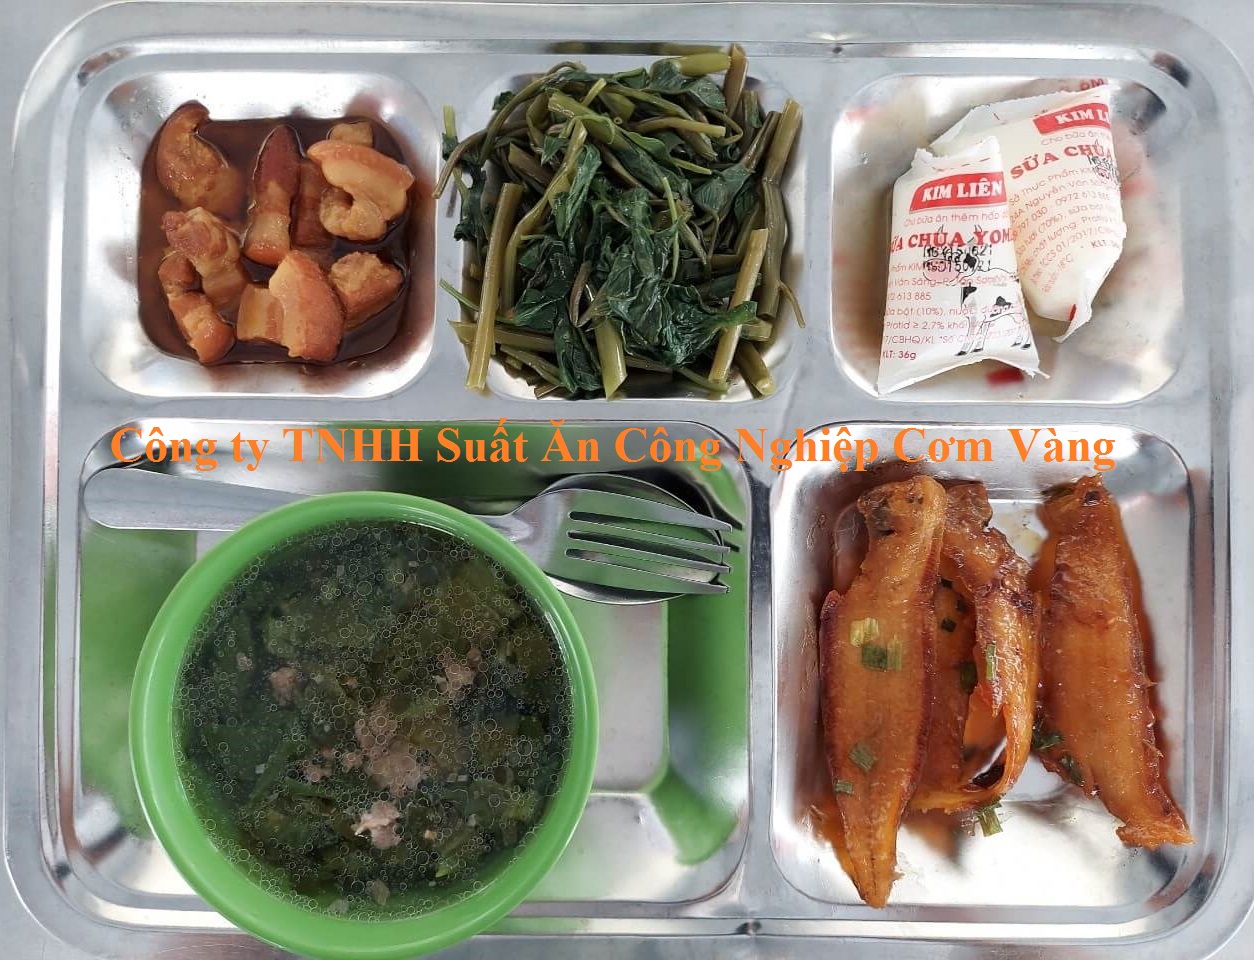 Suất ăn CN ở Đồng Nai